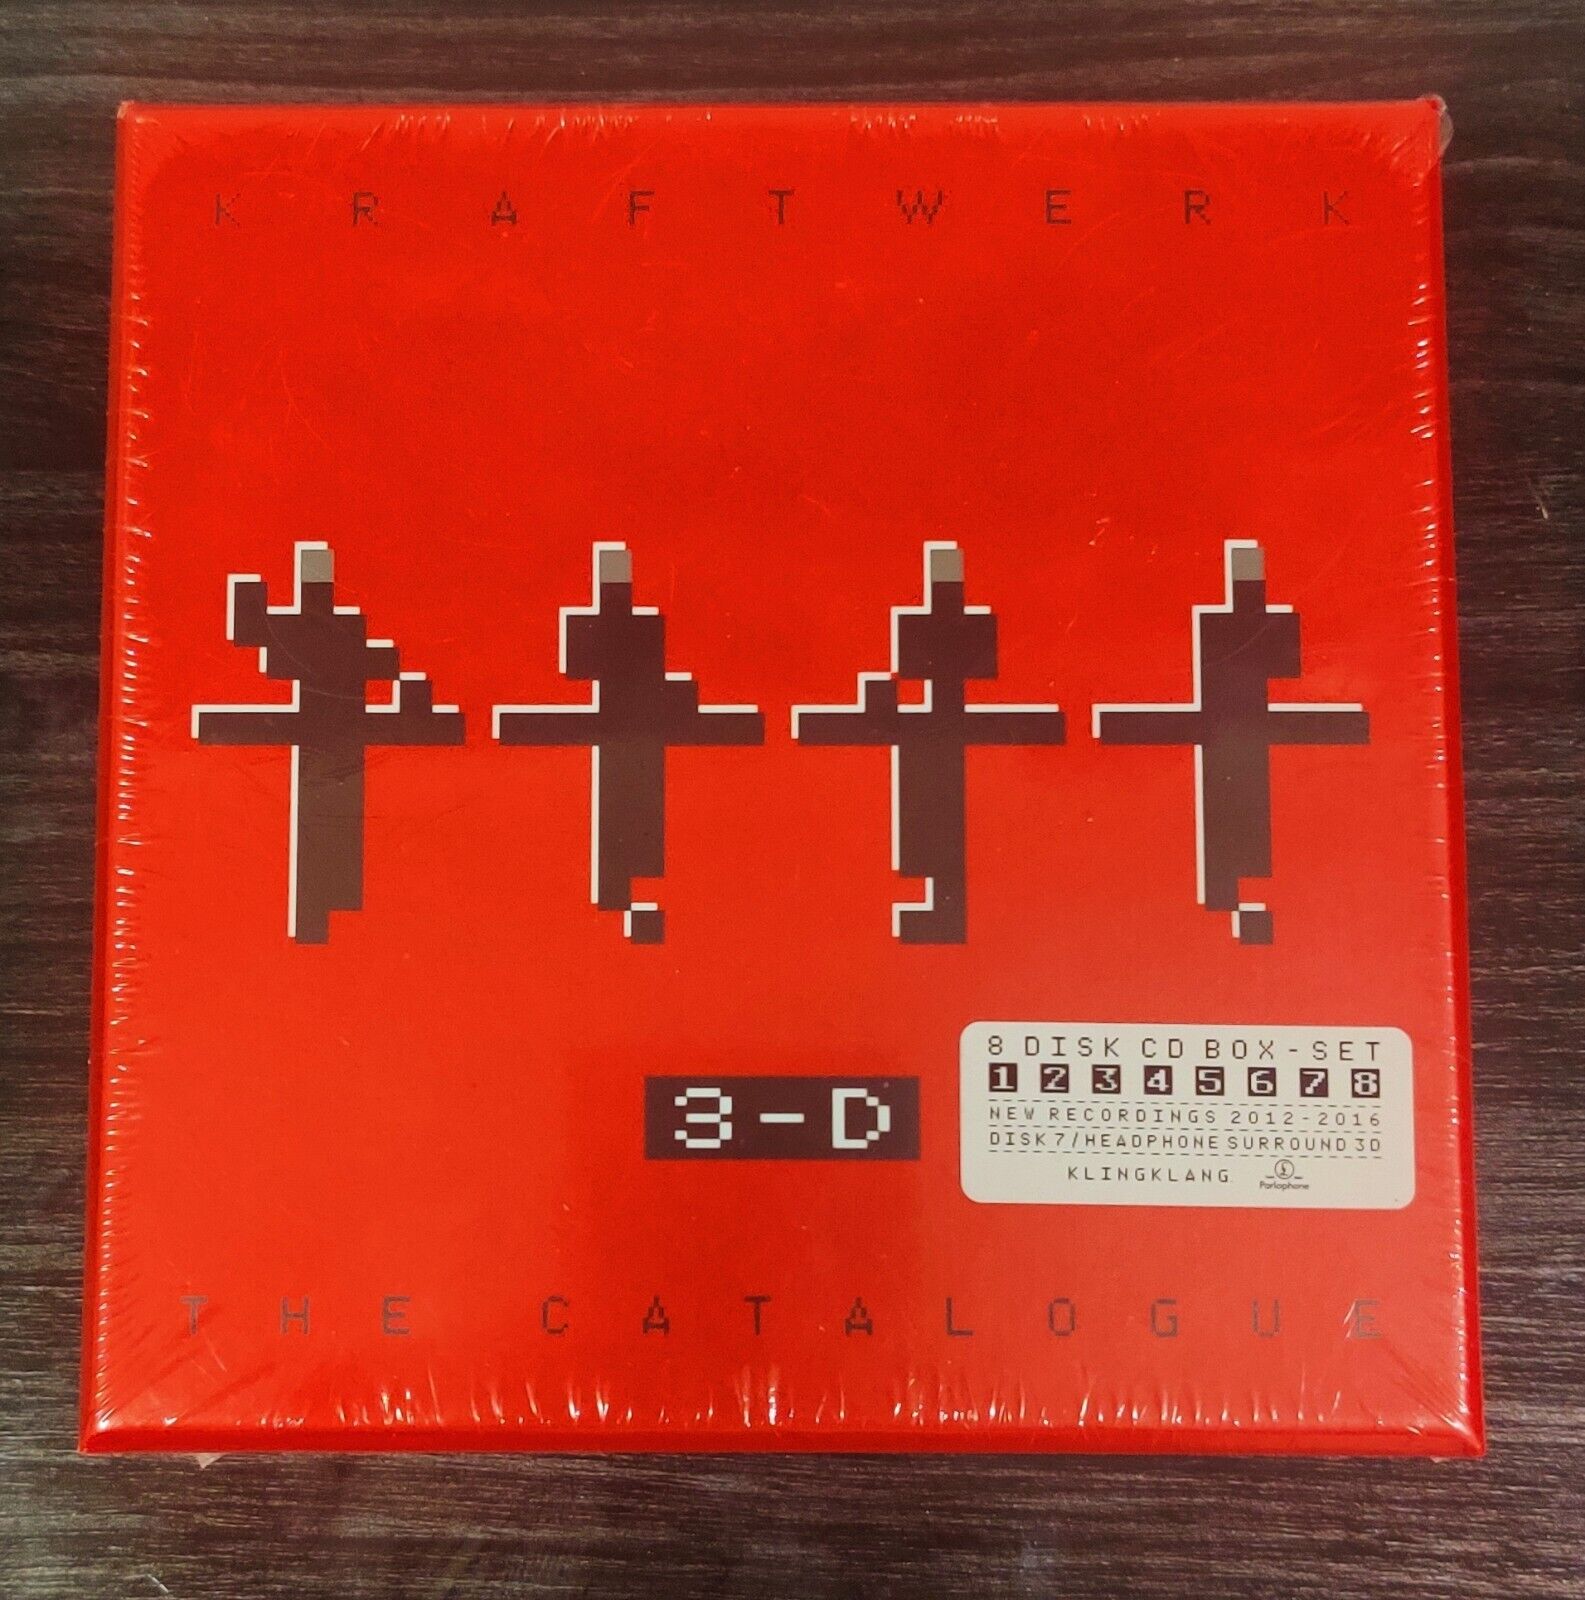 Kraftwerk The Catalogue 3D BluRay, CDs 2017, 8 Discs+Album art book NEW RARE 🦄